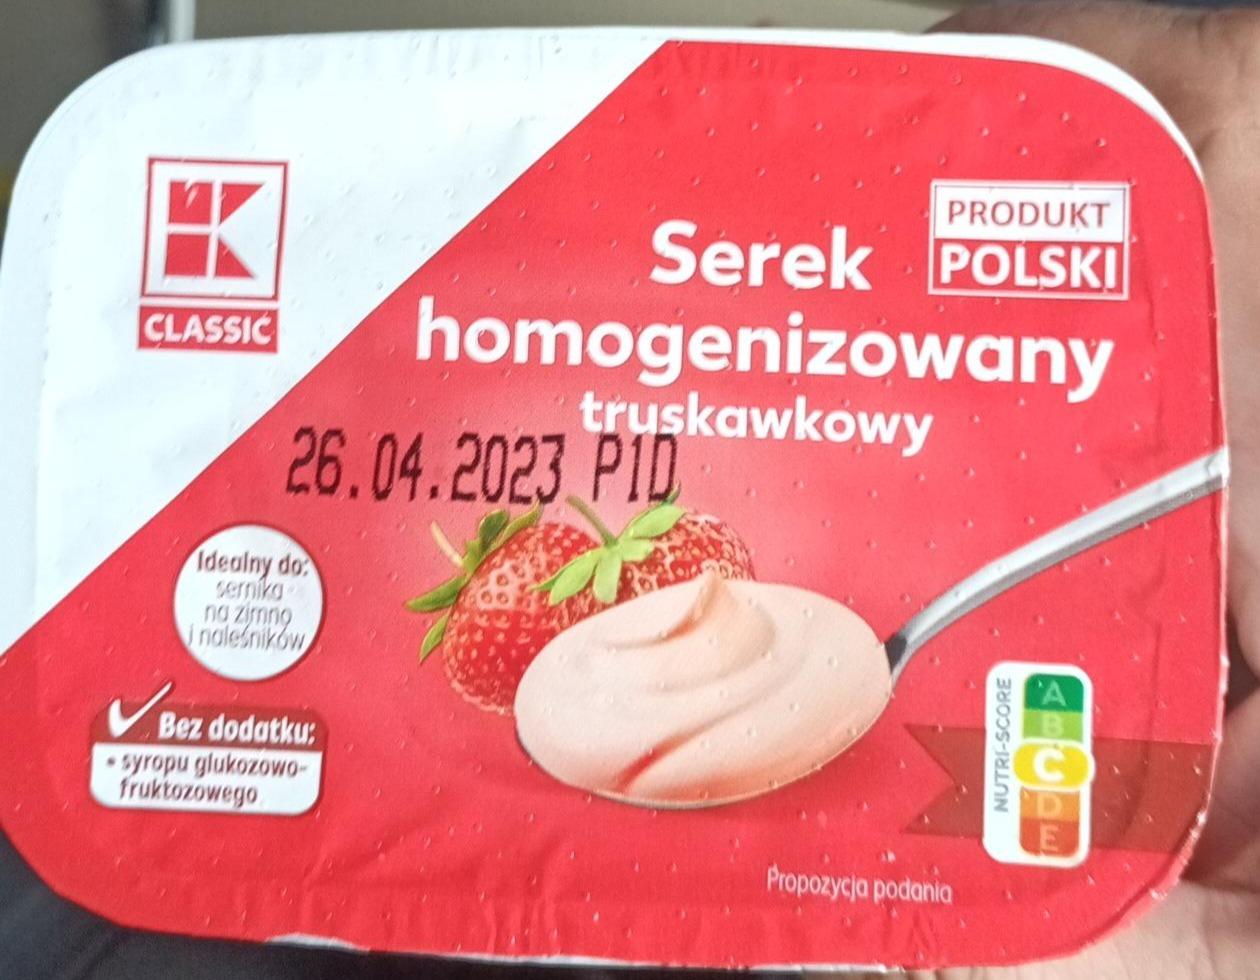 Fotografie - Serek homogenizowany truskawkowy K-Classic